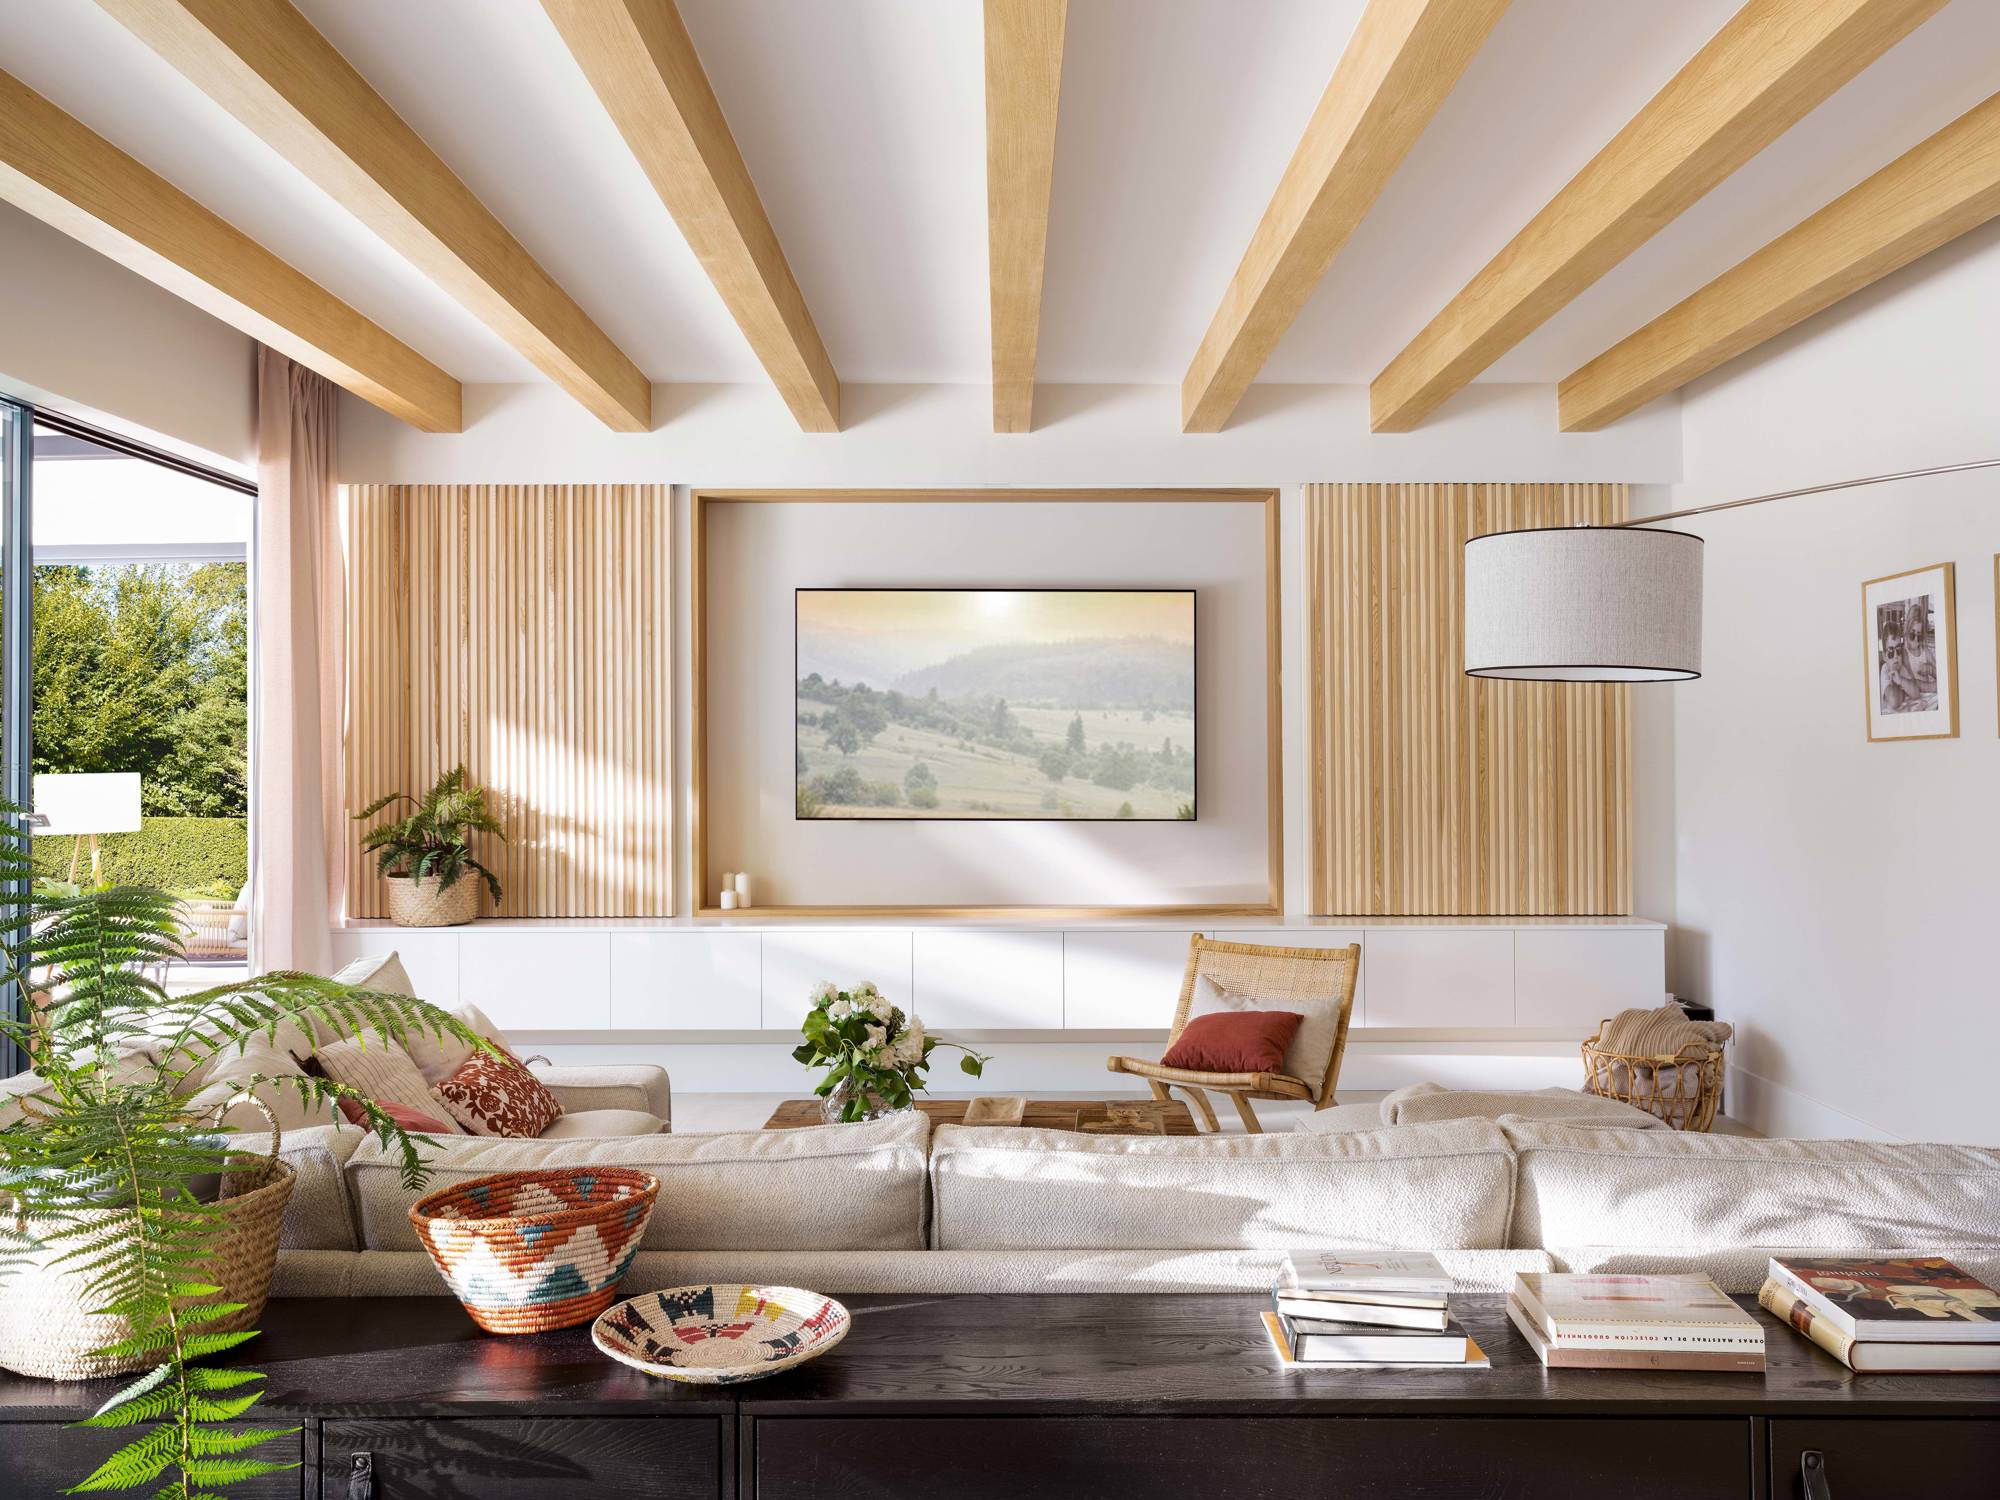 Salón con vigas de madera en el techo y mueble de palillería para ocultar la televisión.